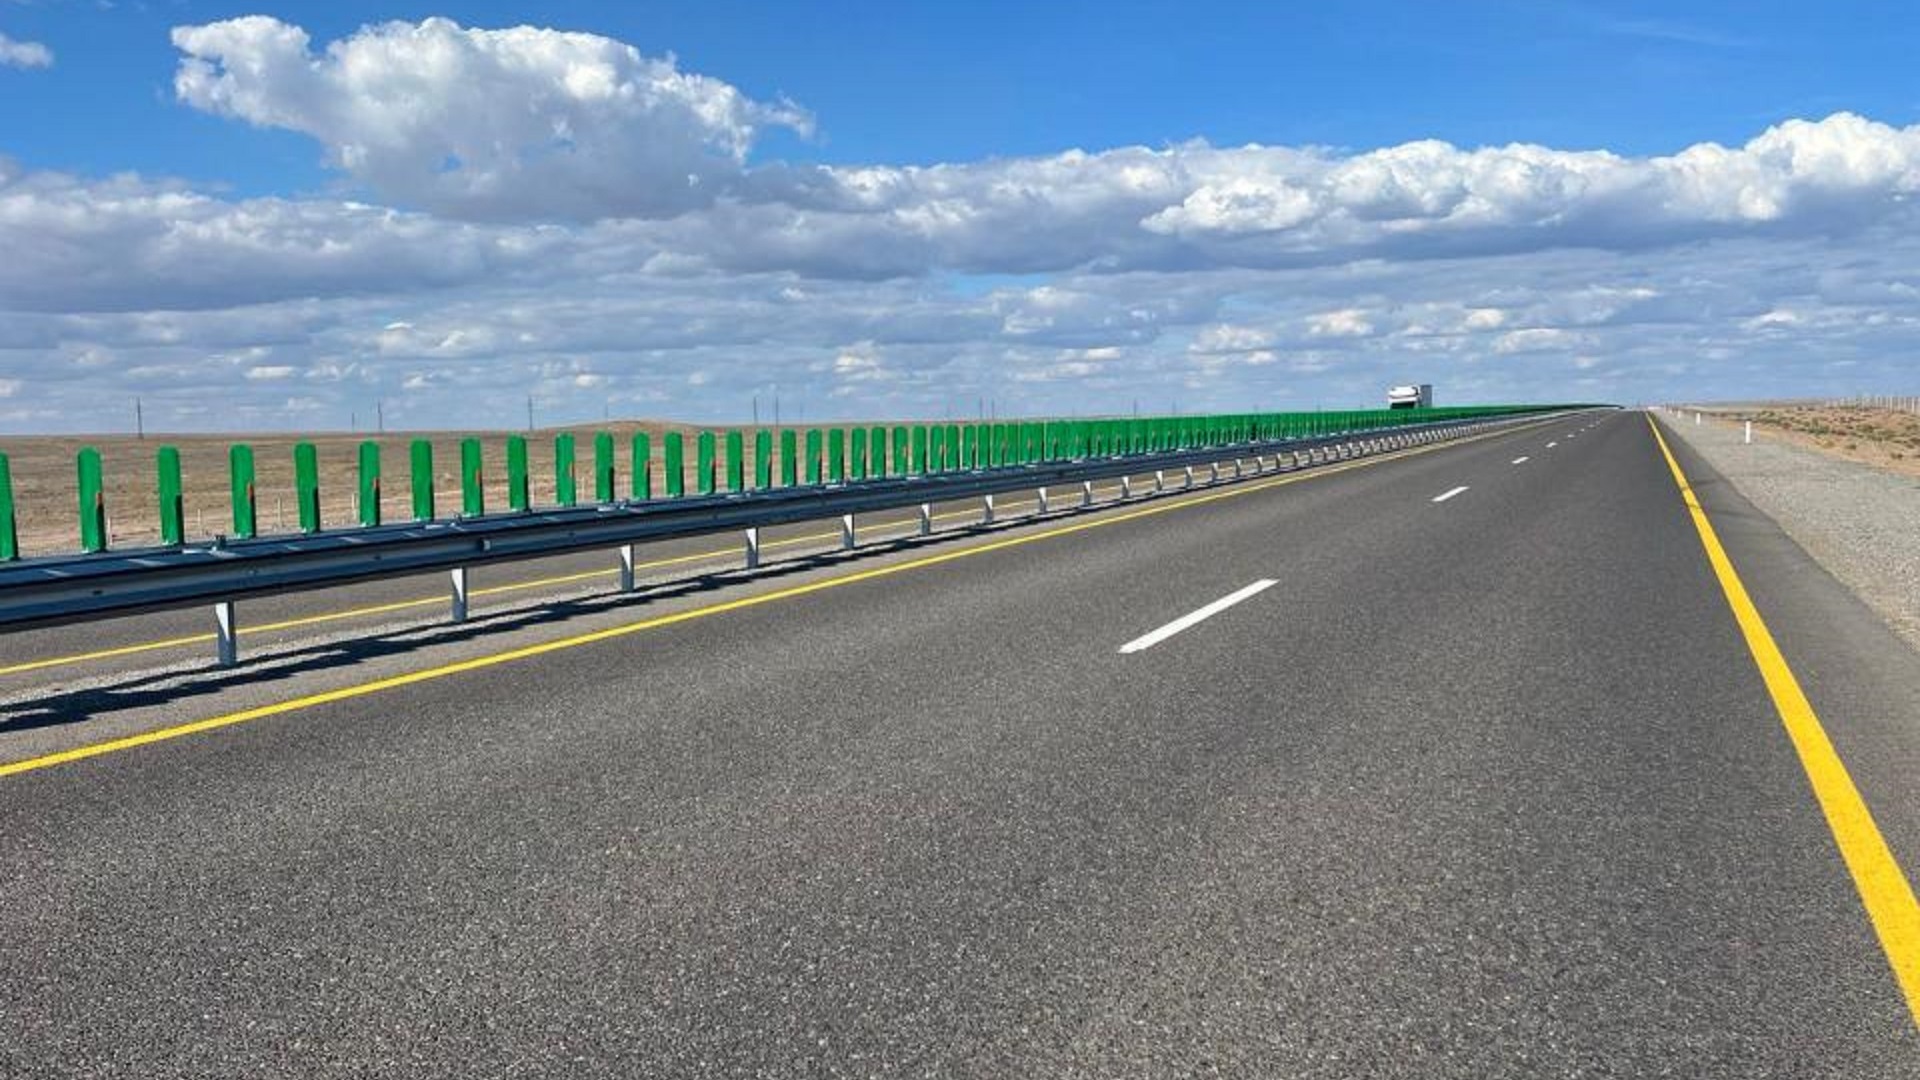 Глава Минтранспорта РК проверил реконструкцию автодороги между Алматы и Астаной - Bizmedia.kz